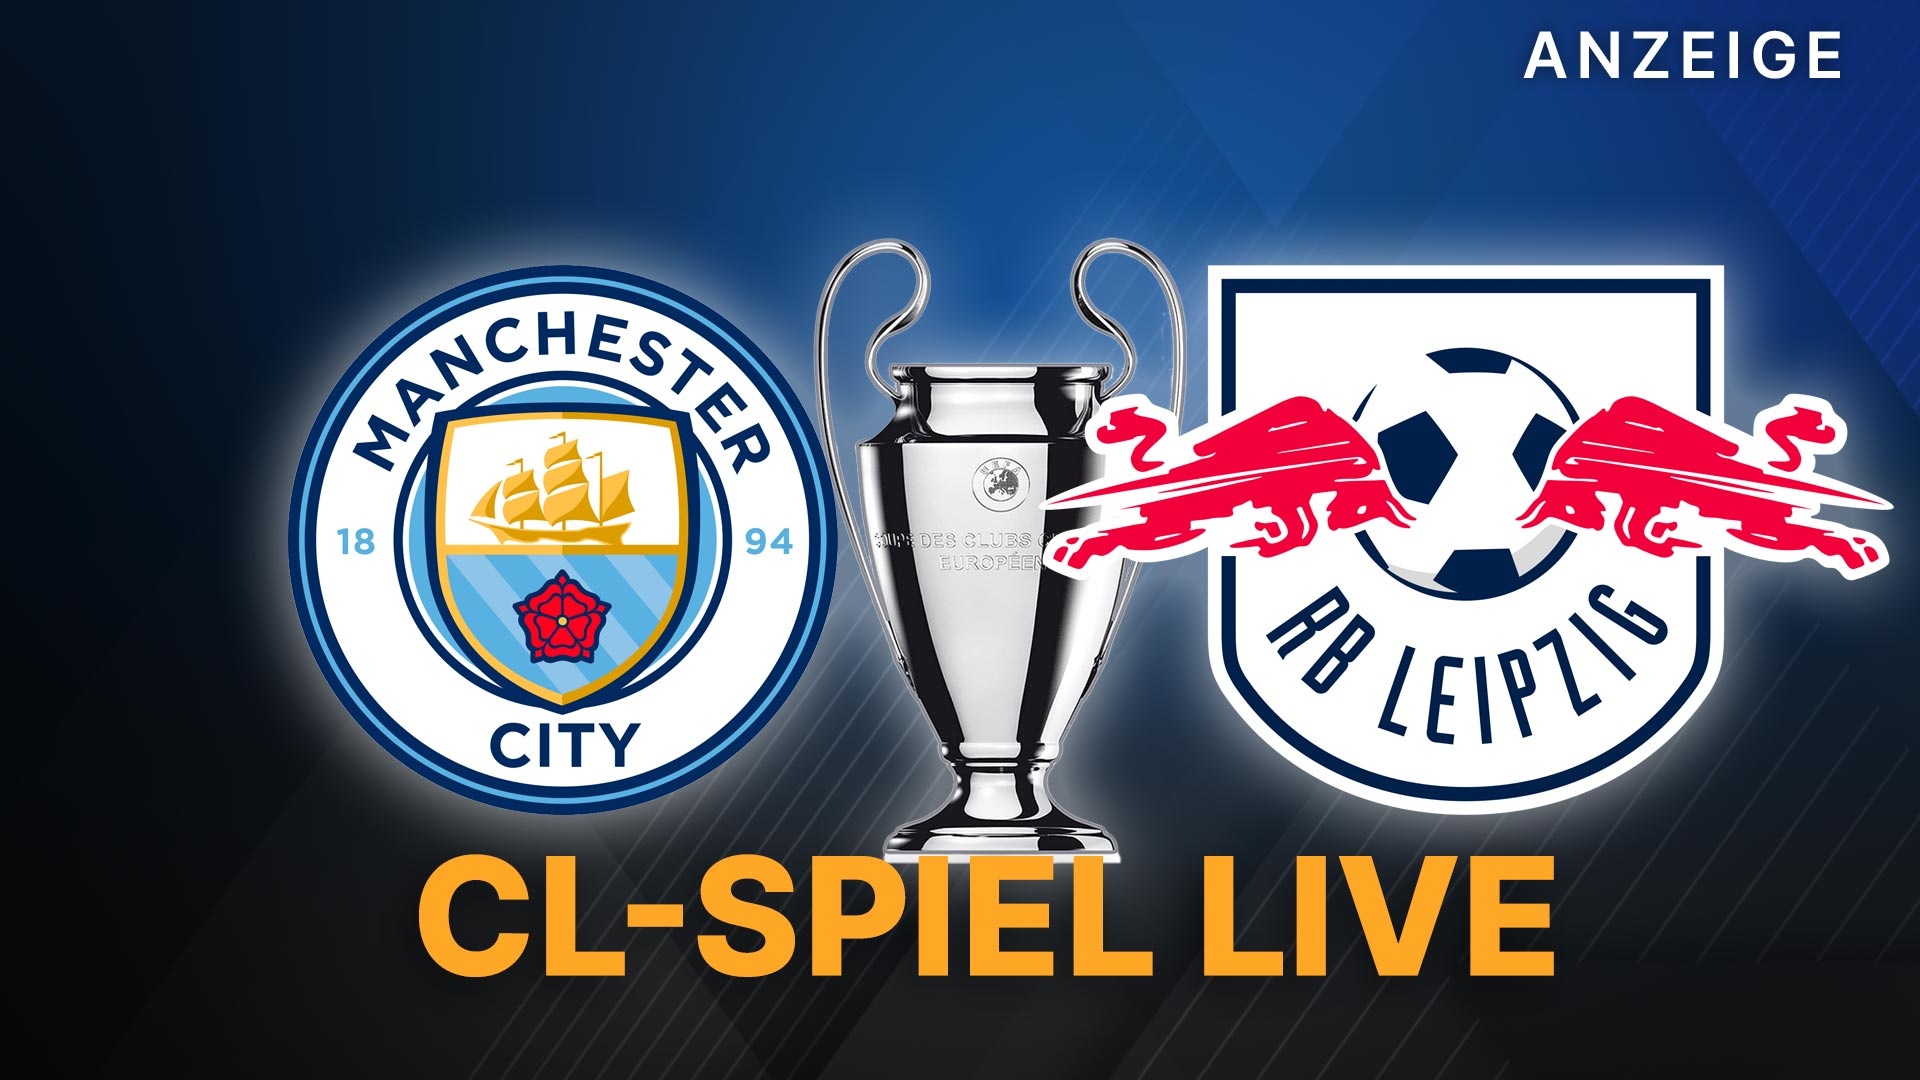 Champions League live Manchester City vs